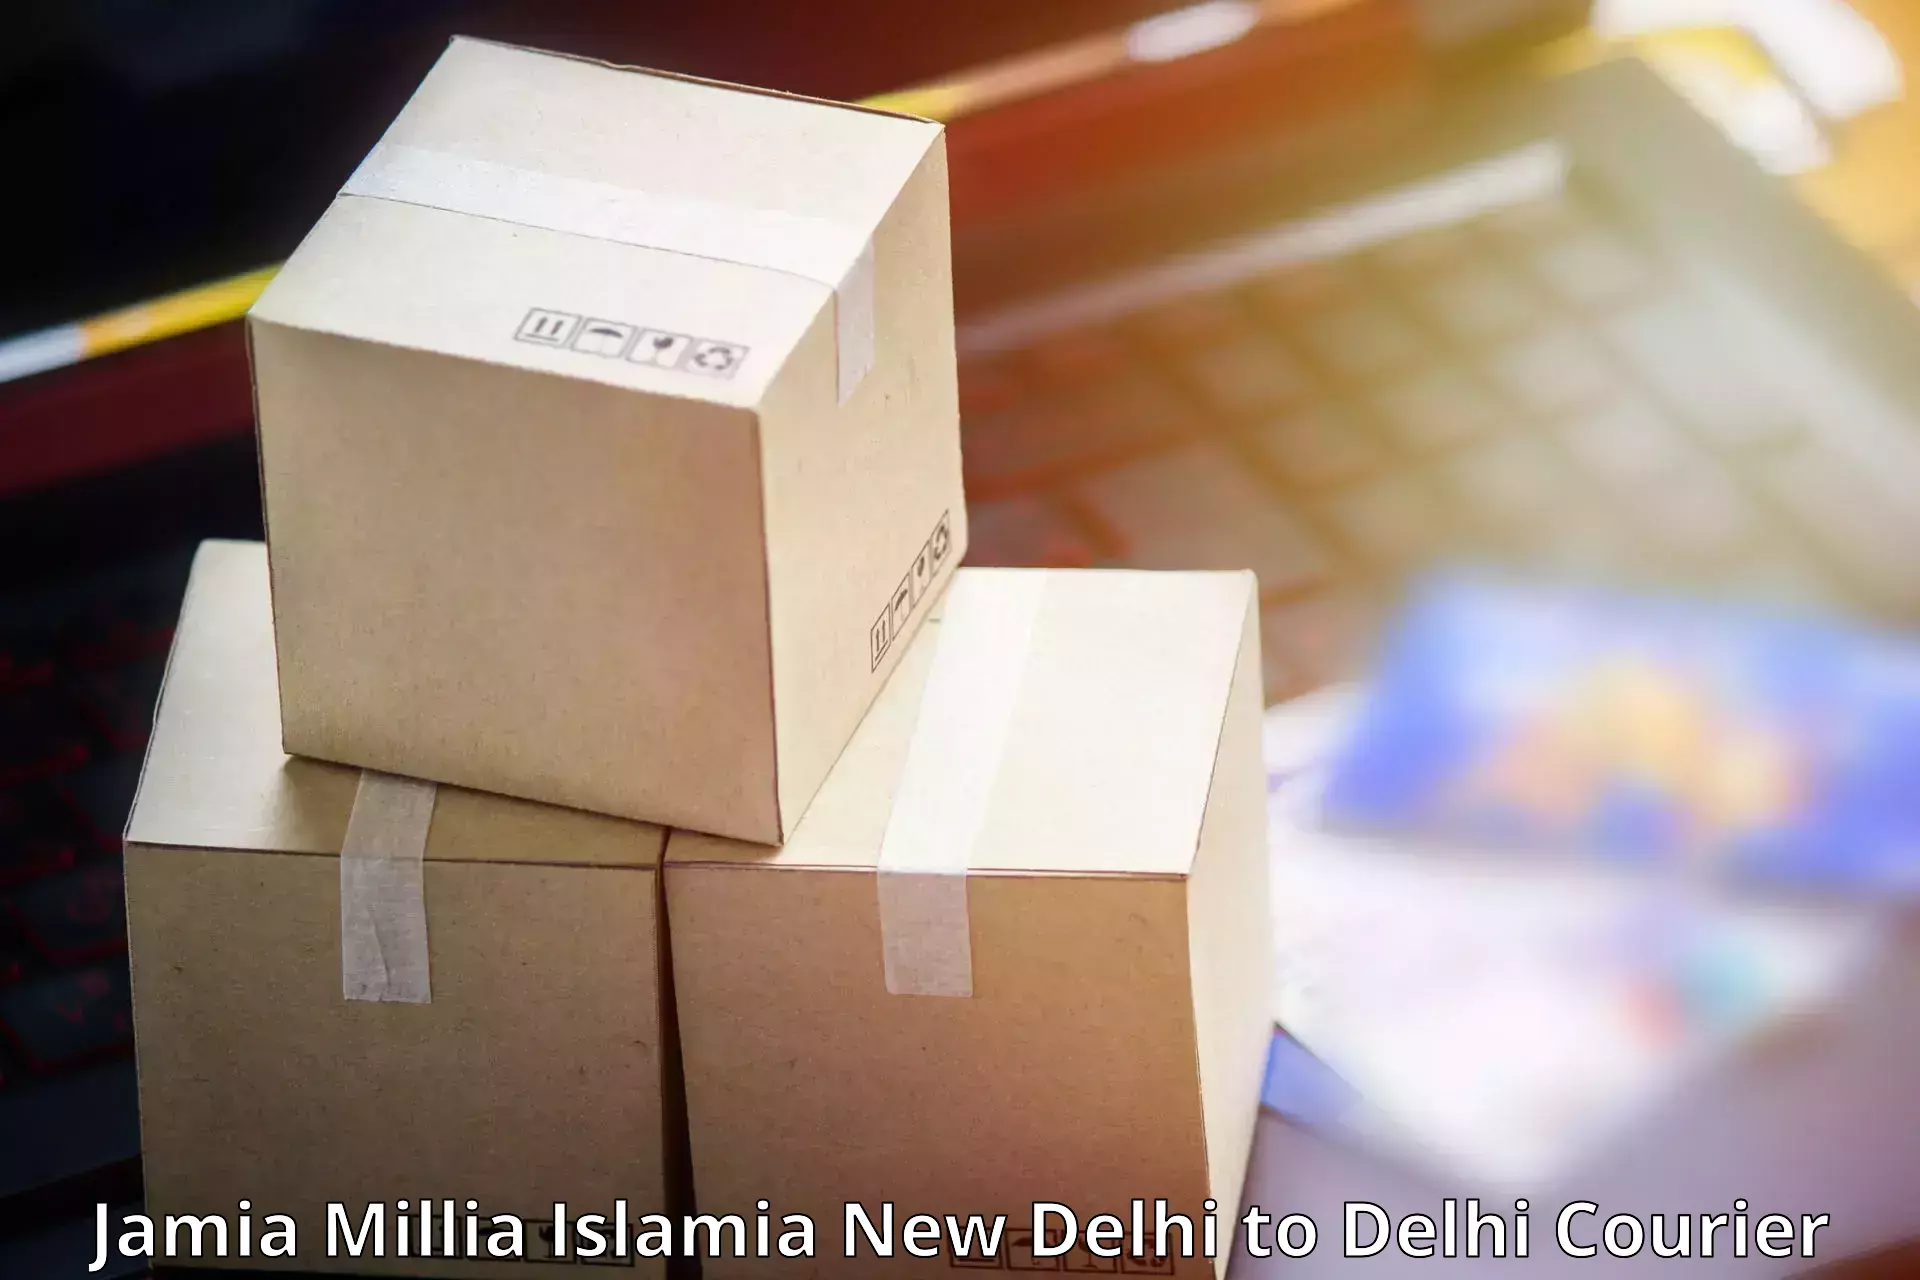 Premium courier services Jamia Millia Islamia New Delhi to Ashok Vihar